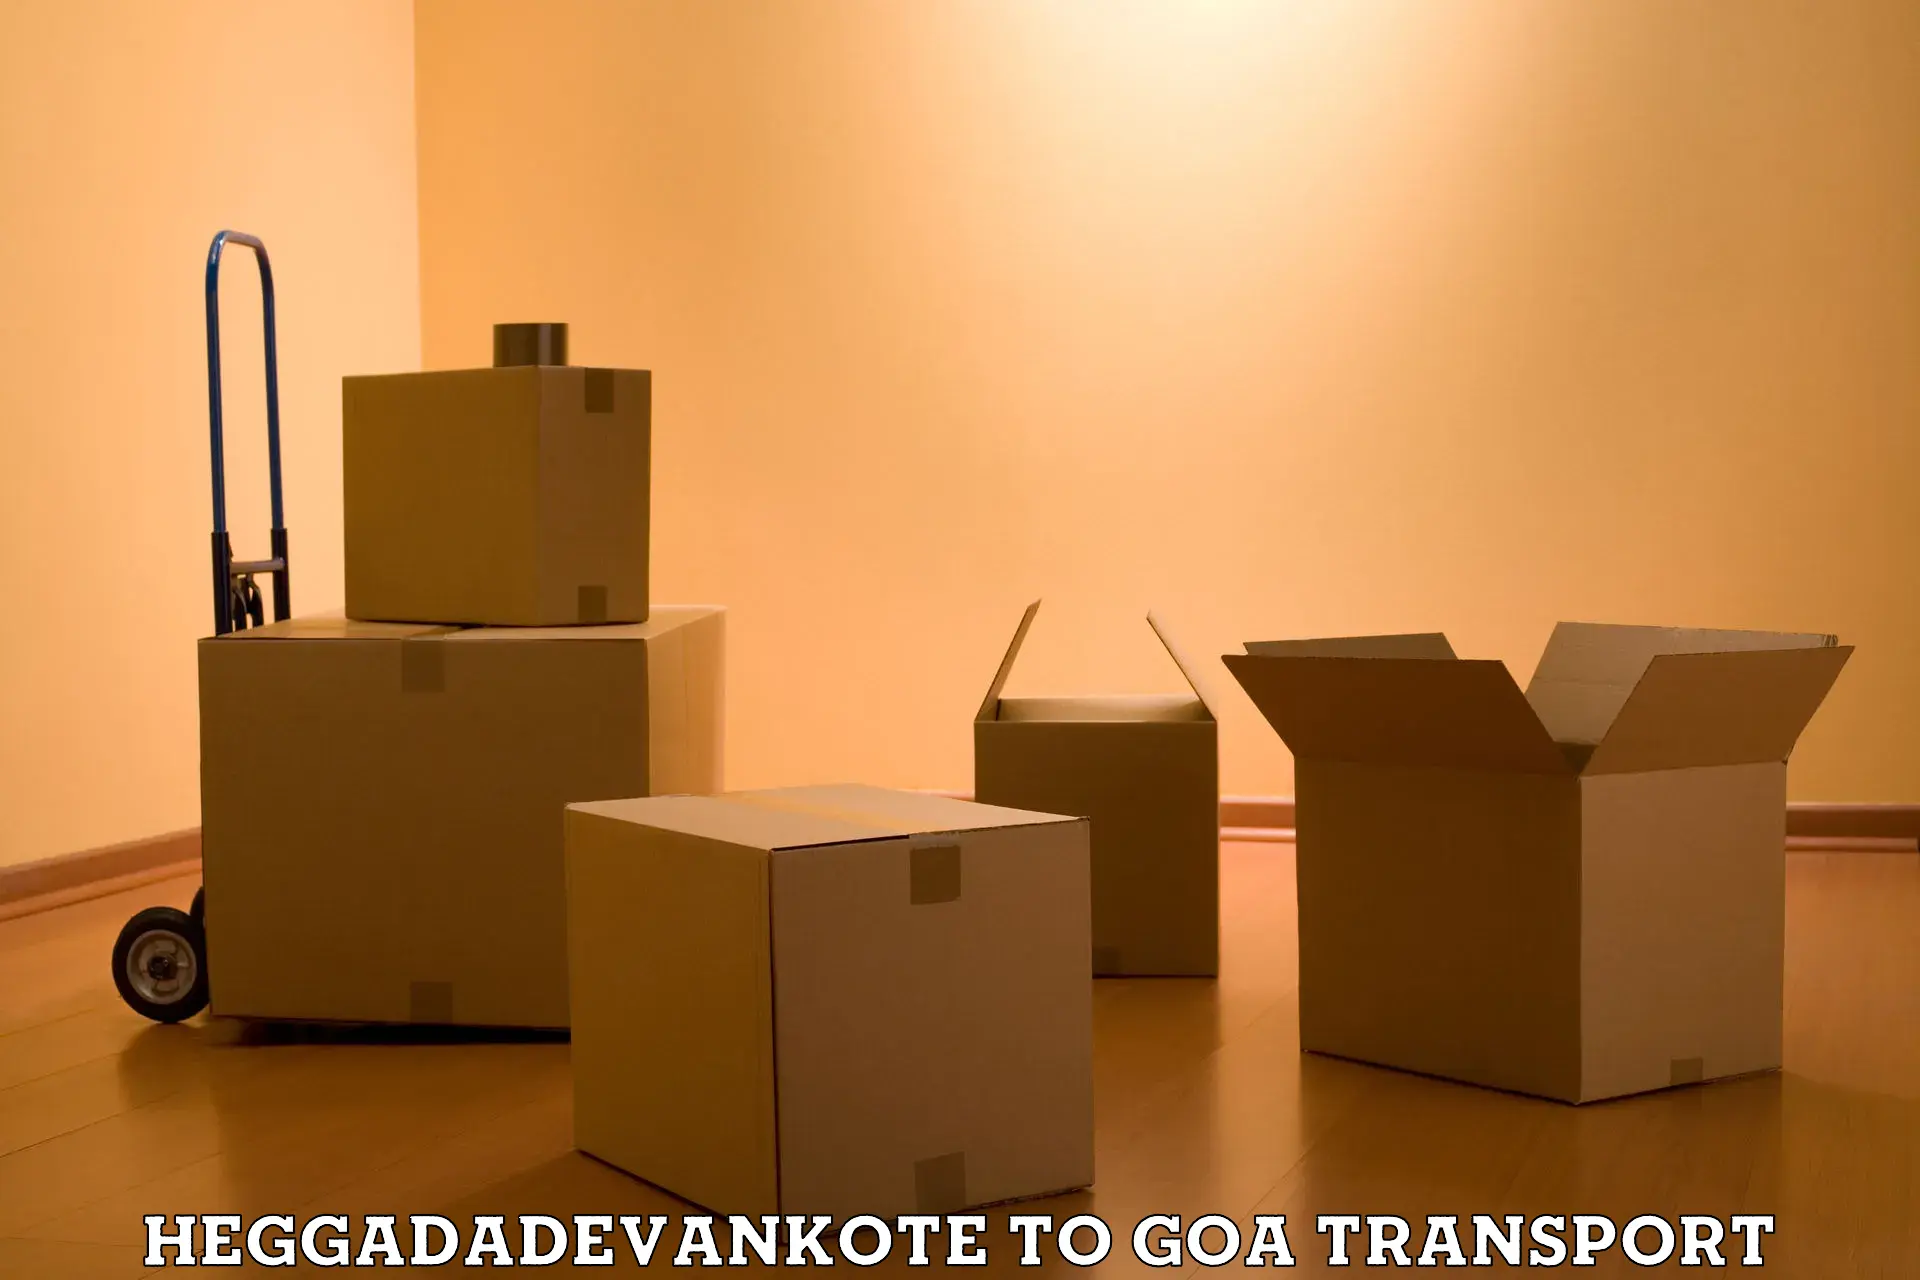 Daily parcel service transport Heggadadevankote to Panaji